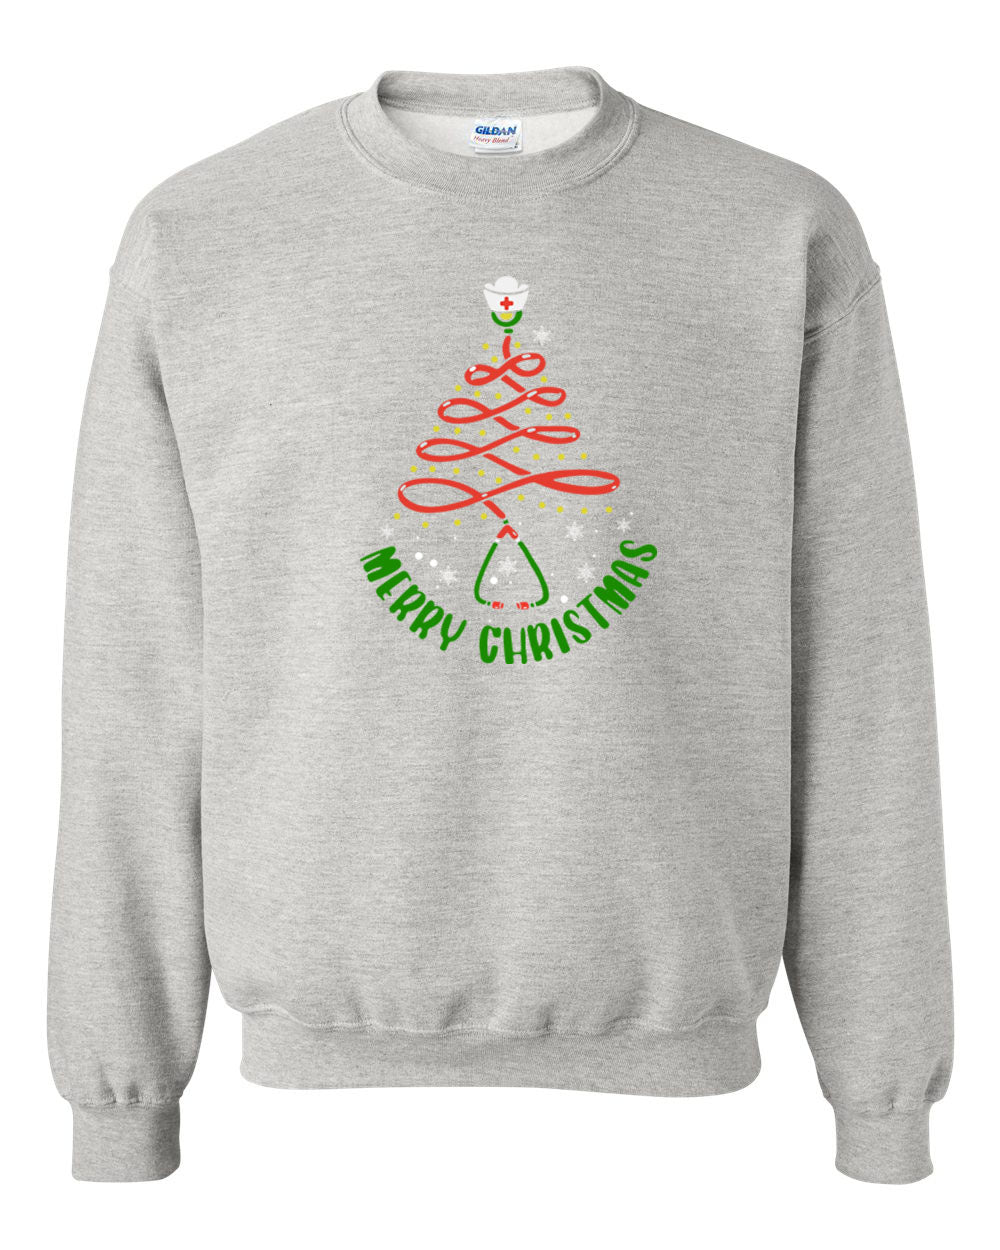 MERRY CHRISTMAS STETHOSCOPE non hooded sweatshirt